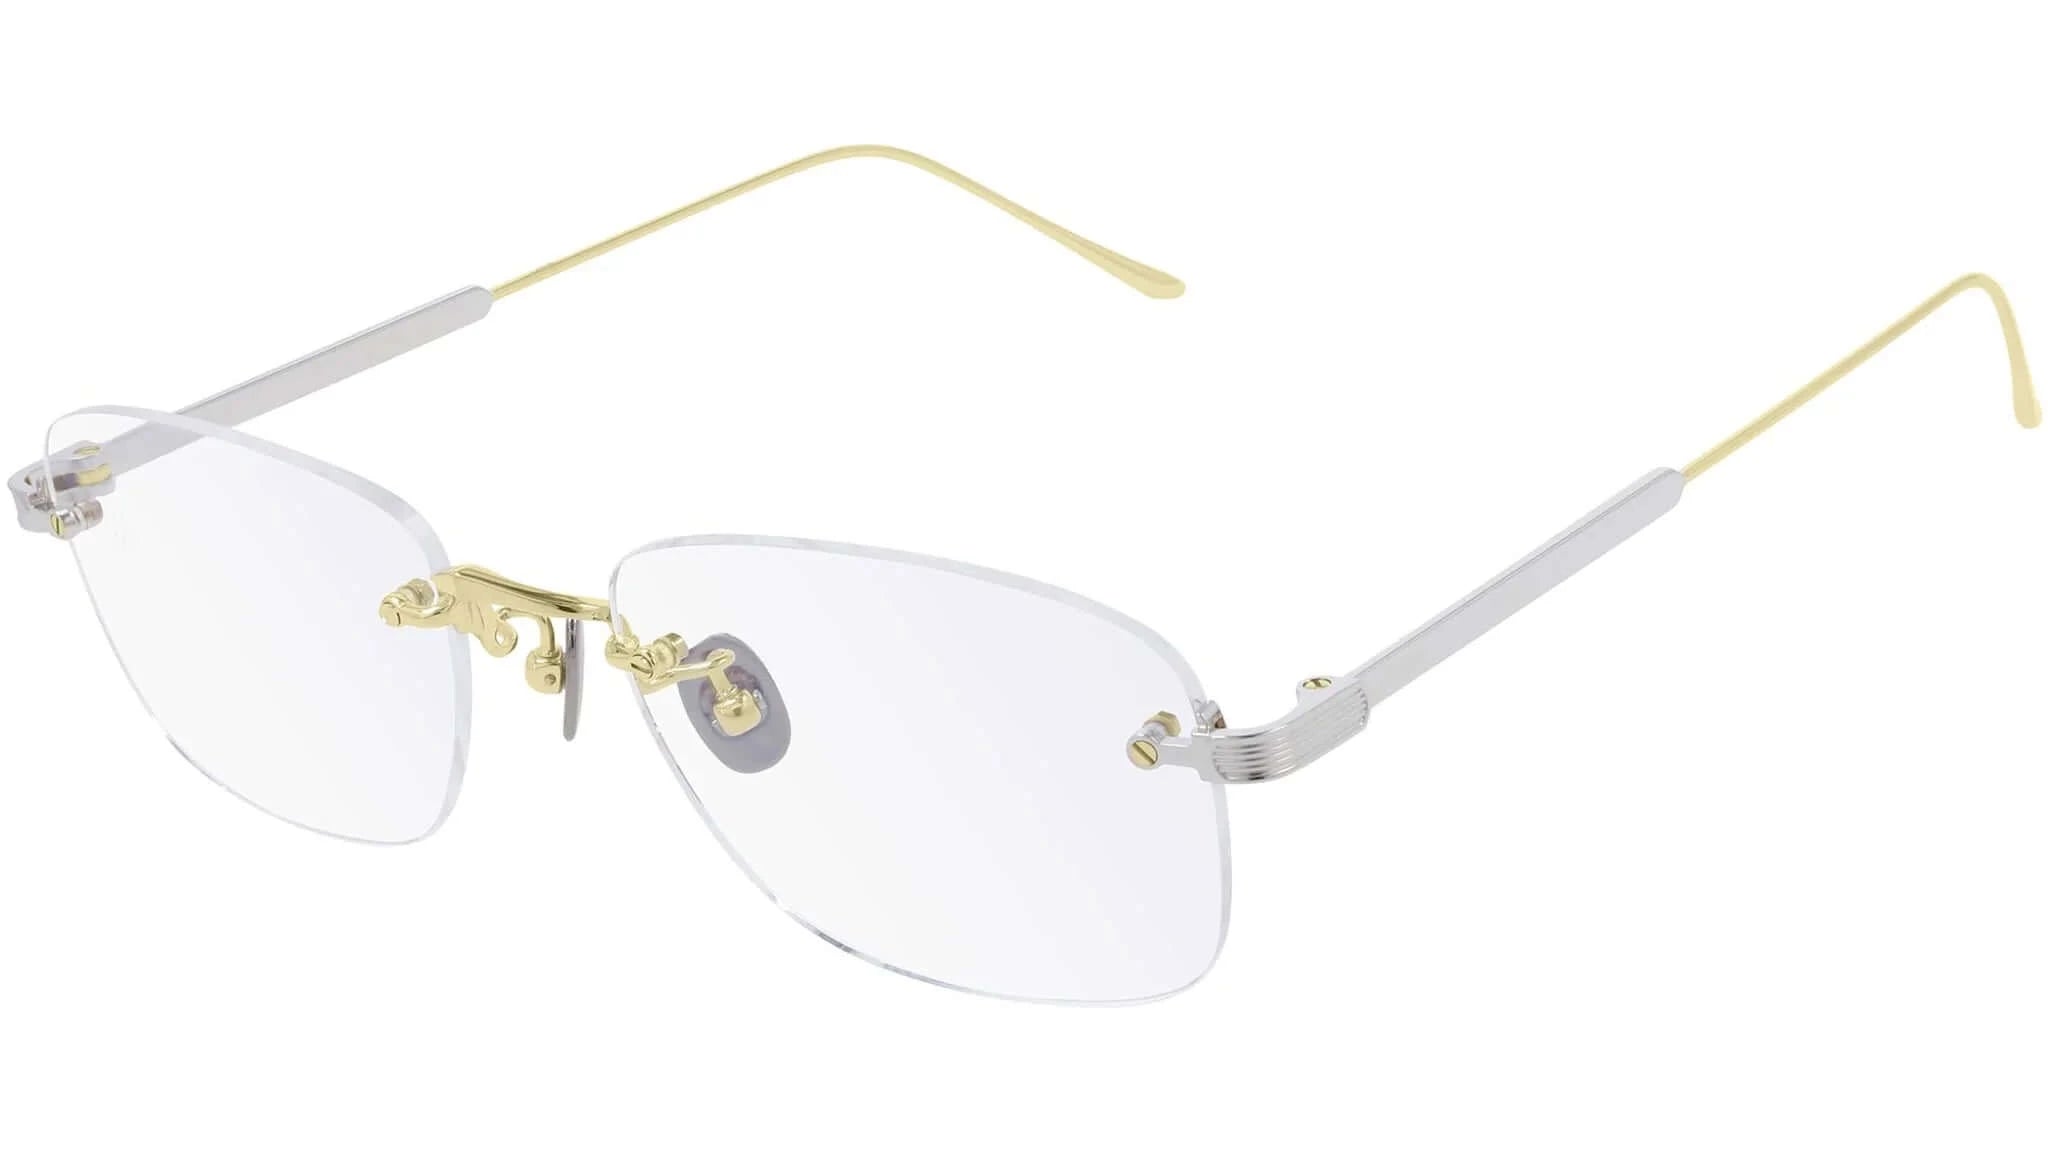 CT0228O نظارة طبية كارتير - كارتير نظارة طبية رجالية  - نظارة طبية رجالية - نظارة طبية رجالية كارتير